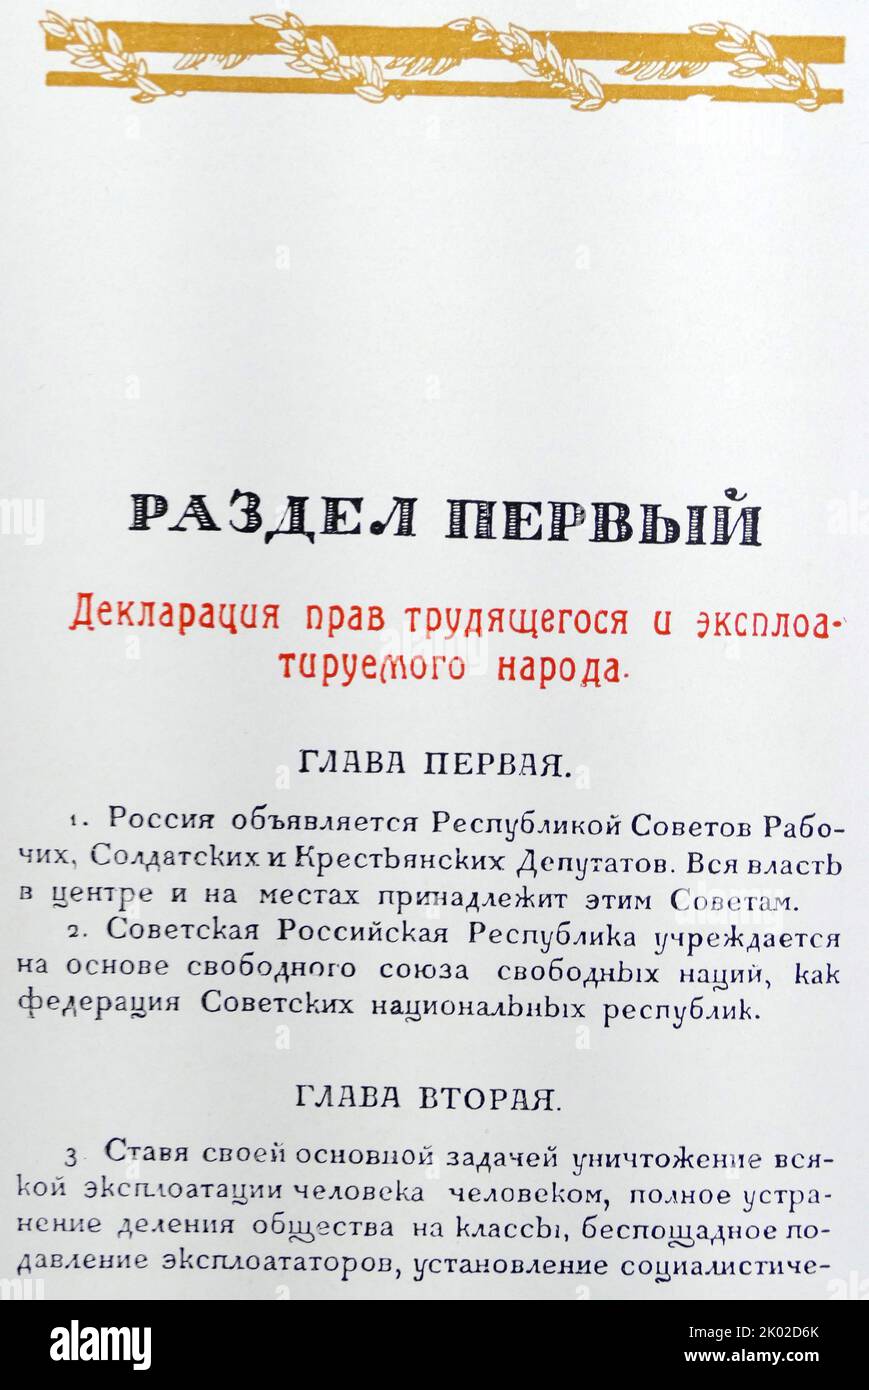 Copertina e prima pagina della Costituzione RSFSR adottata dal V Congresso sovietico All-Russian. Luglio, 1918.&#13;&#10; Foto Stock